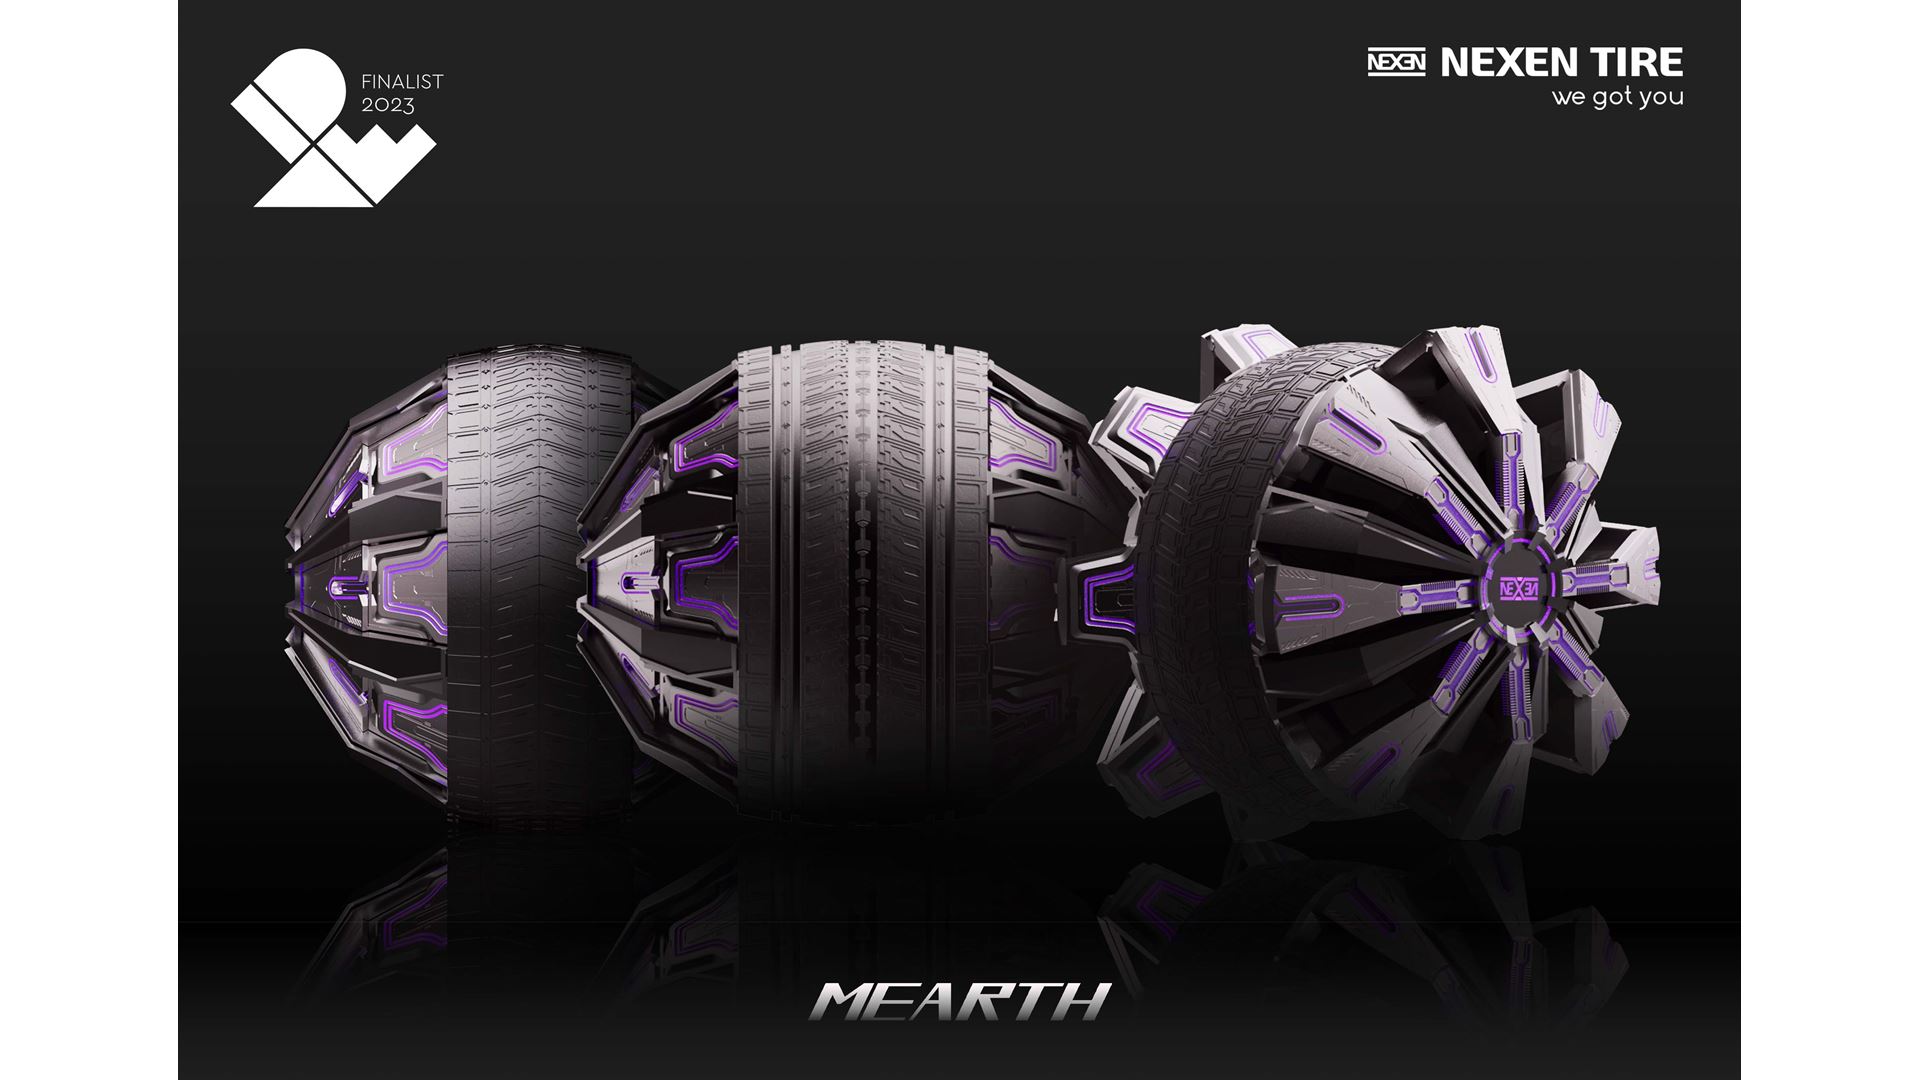 nexen-tire-wins-design-award-idea-for-mars-themed-concept-tire-mearth